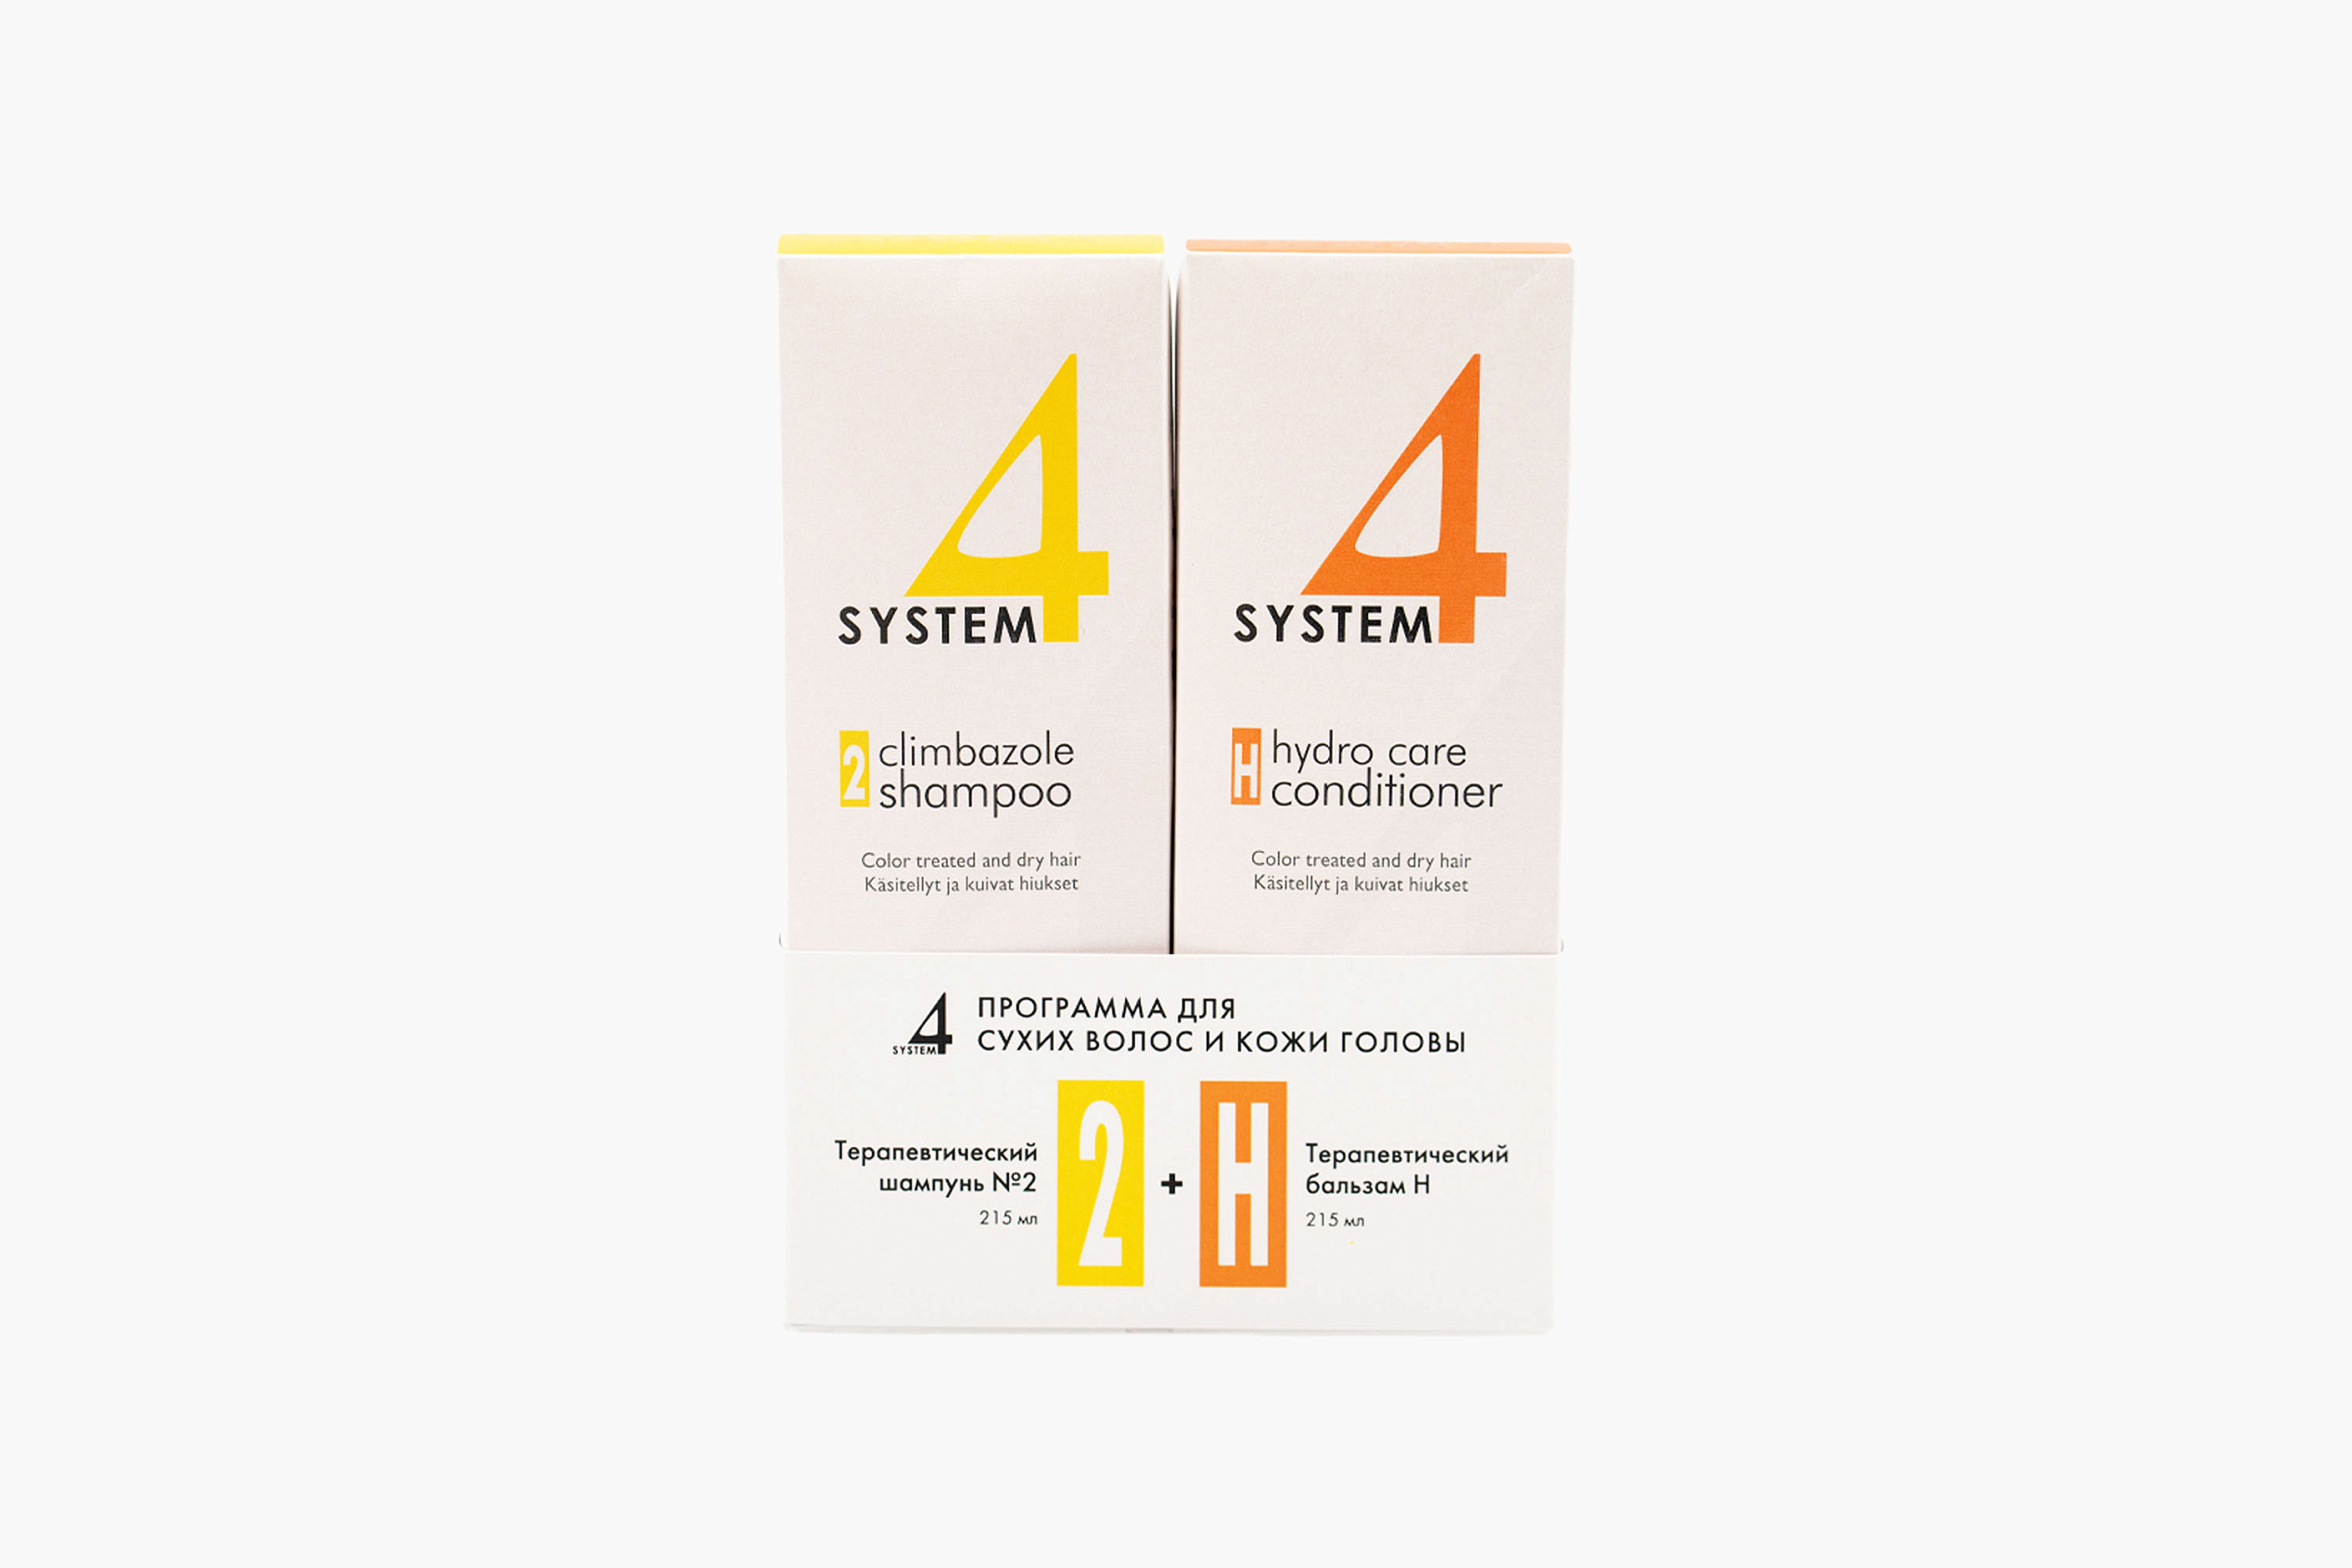 System 4 2 Climbazole Shampoo + H Hydro Care conditioner фото 1